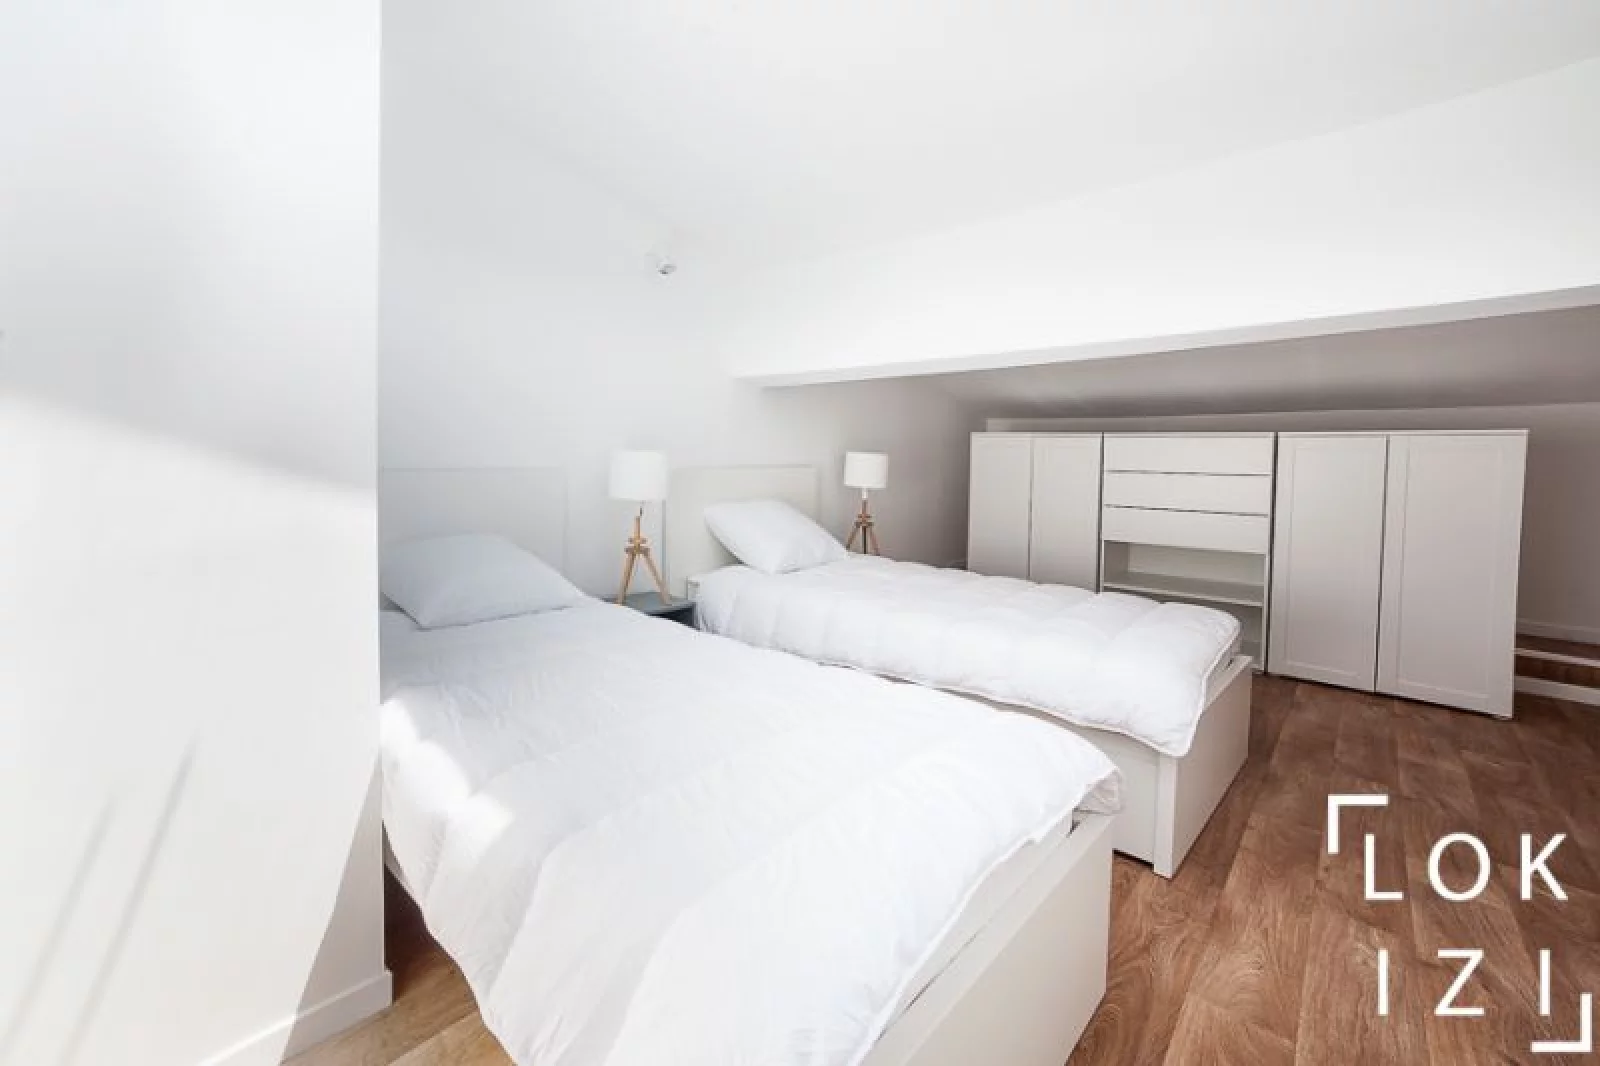 Location appartement meublé duplex 54m² (Bordeaux centre - St Bruno)